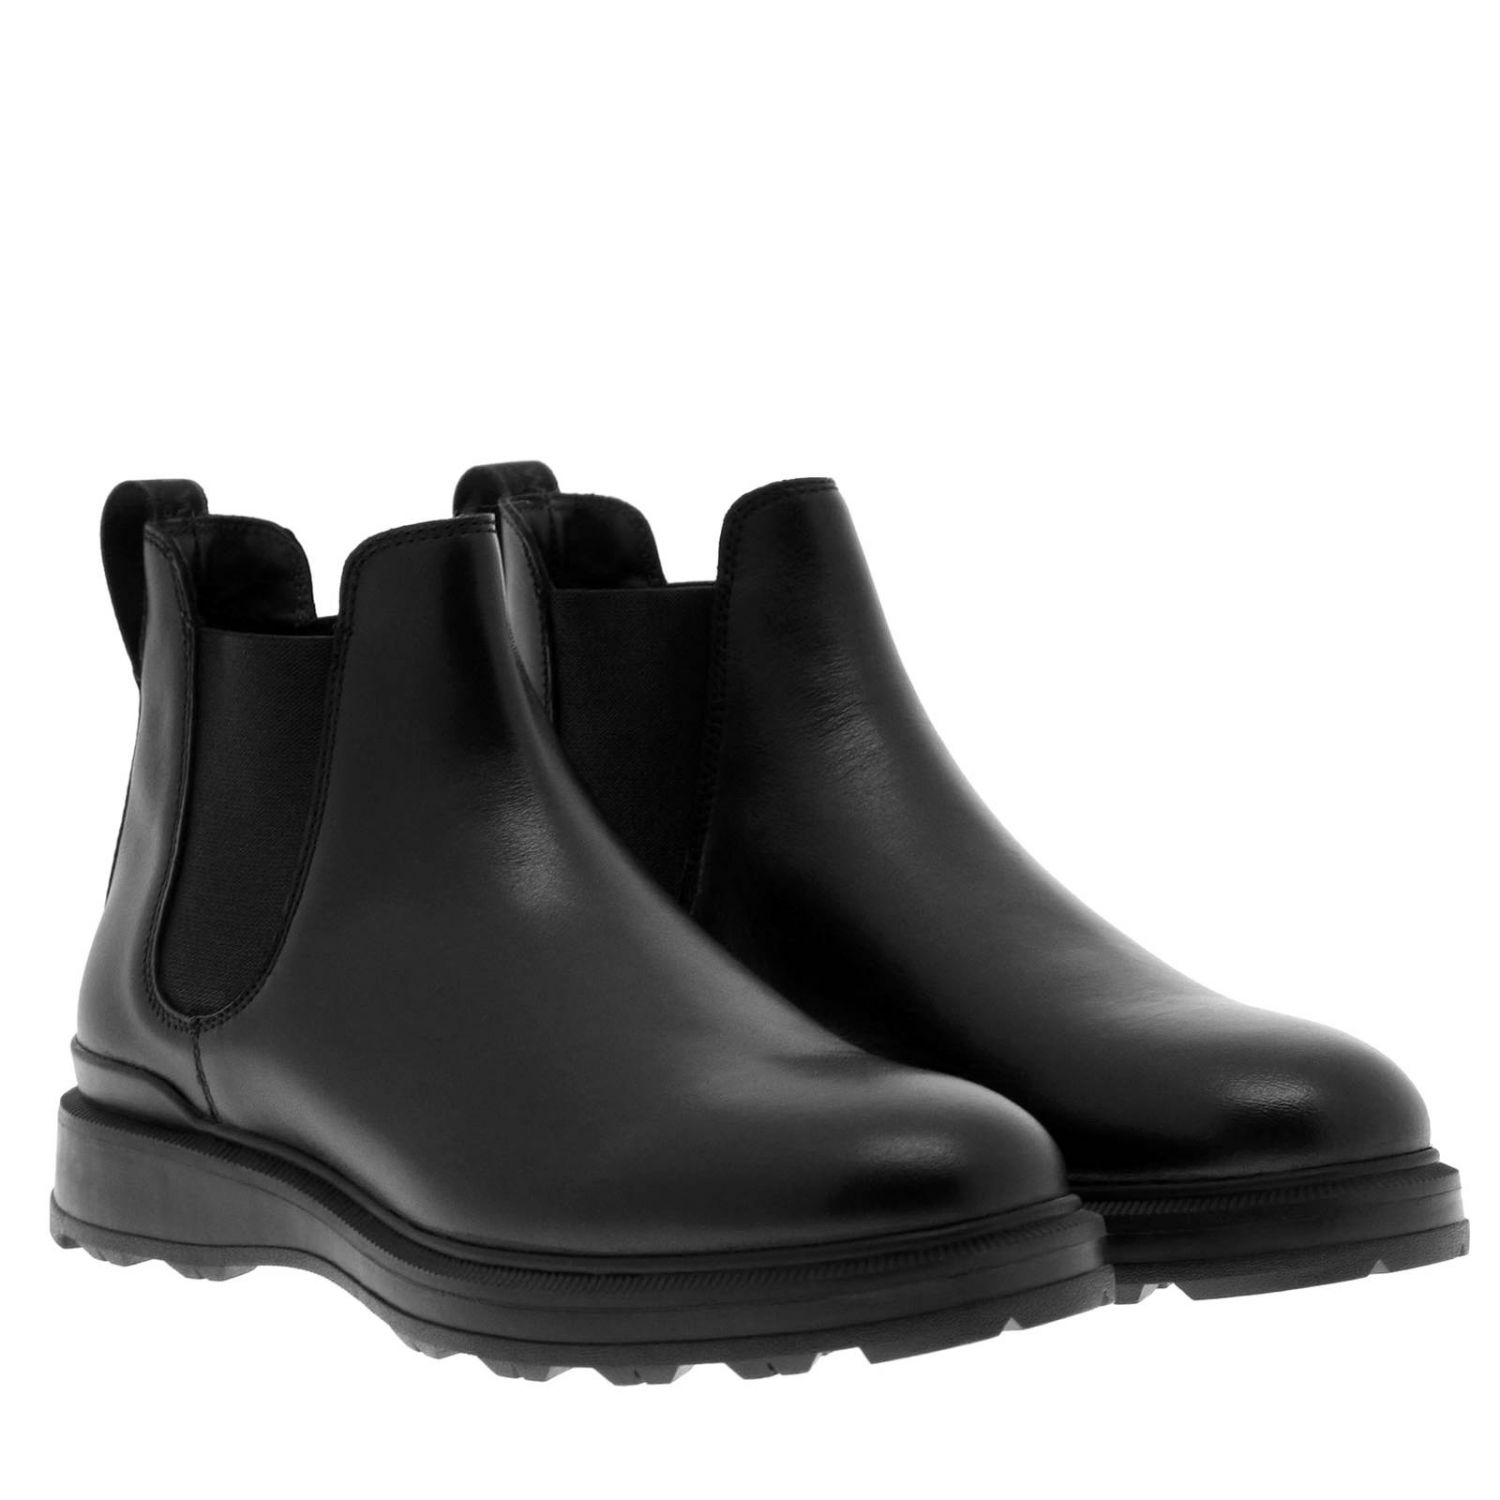 Woolrich Outlet: Shoes men | Boots Woolrich Men Black | Boots Woolrich ...